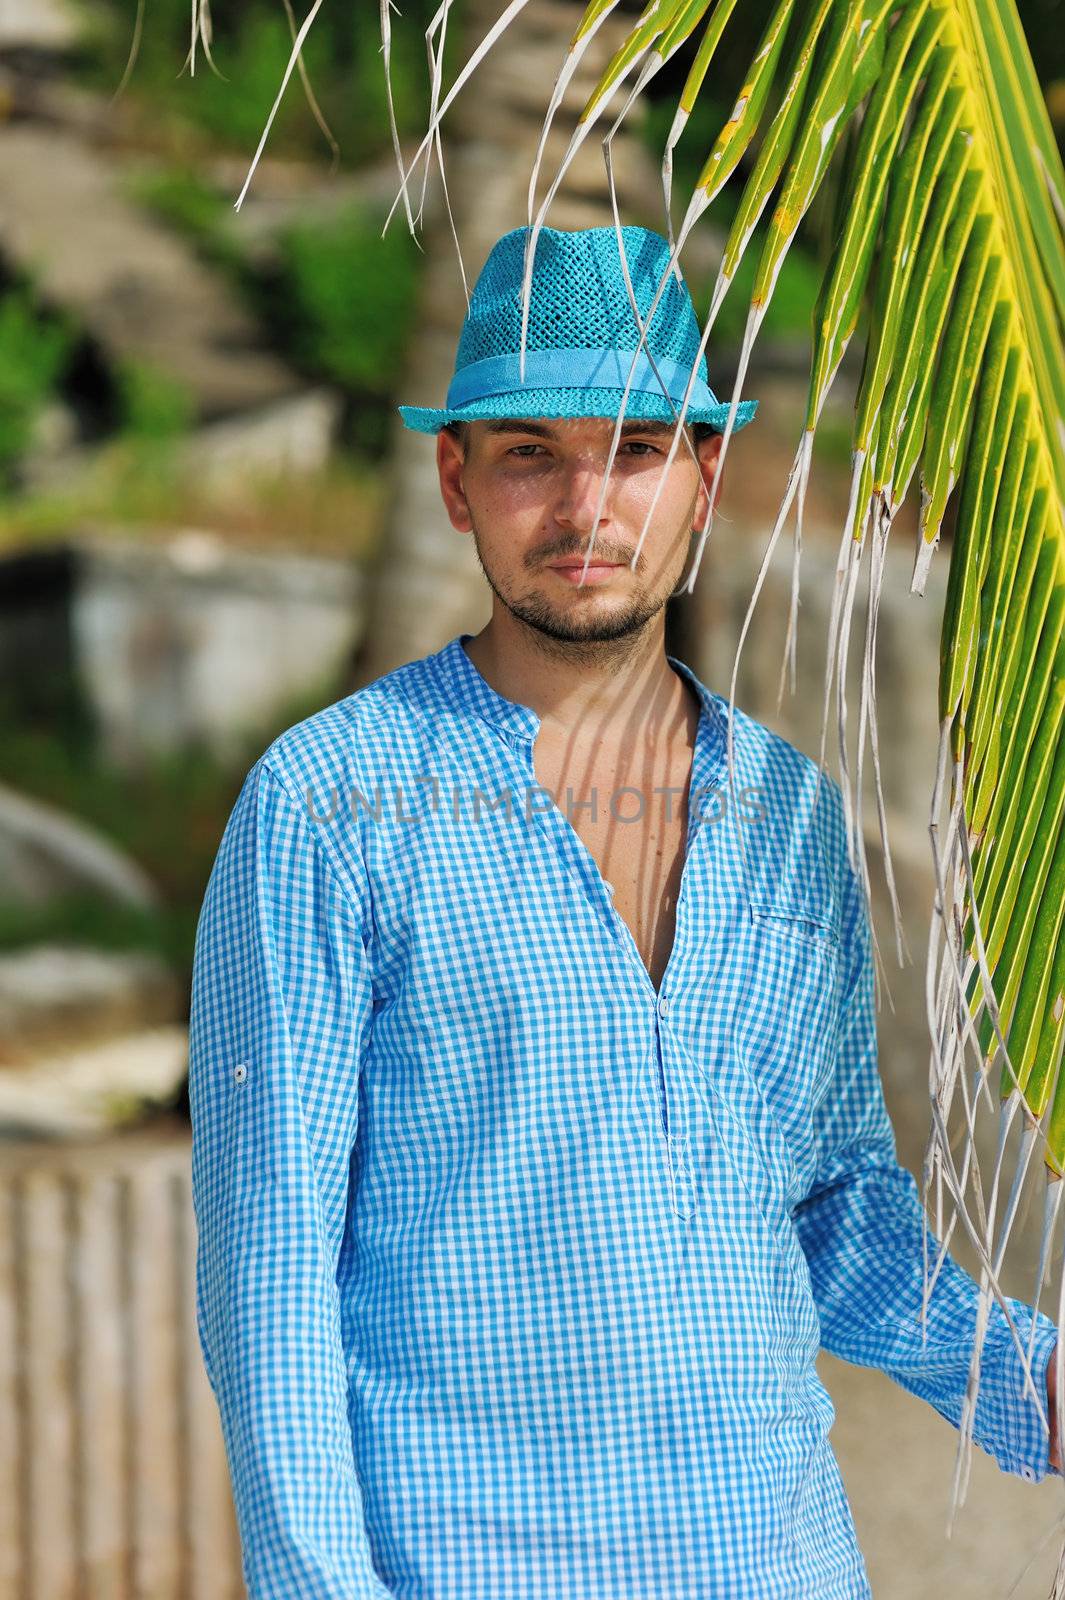 Man in blue hat near palm tree